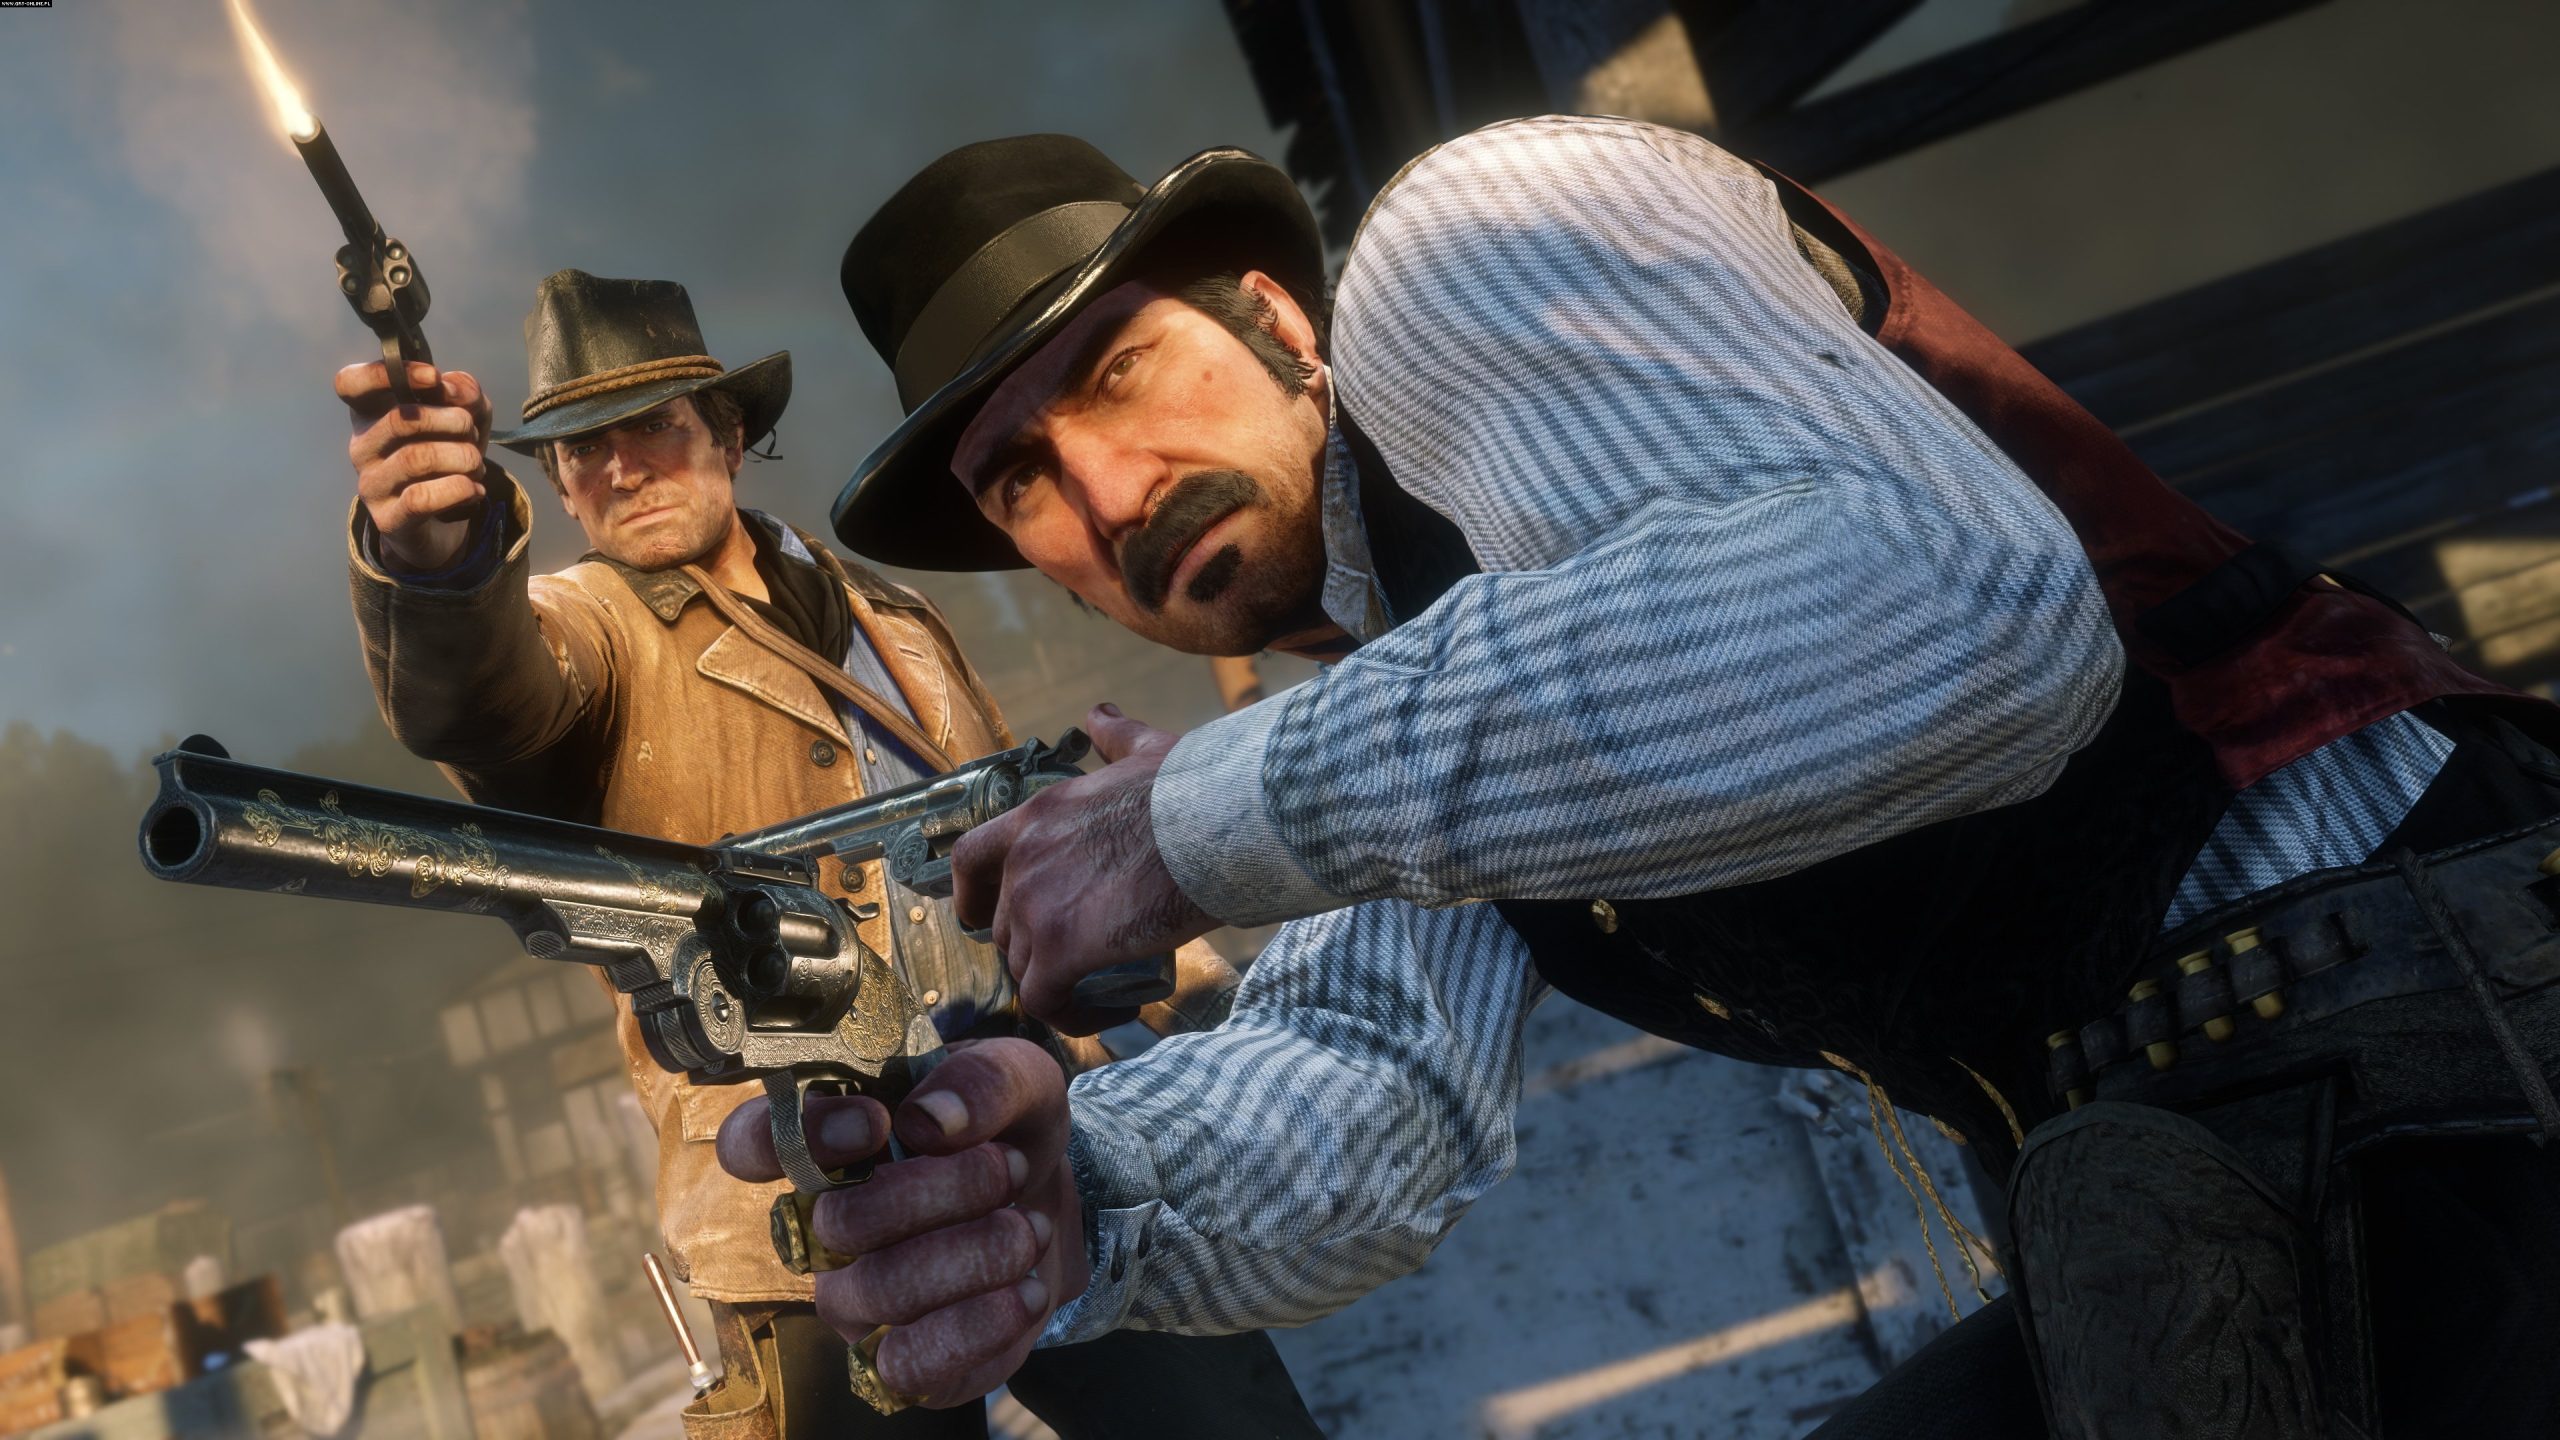 Imagem mostra cena de divulgação de Red Dead Redemption 2, com os personagens Arthur Morgan e Dutch van der Linde disparando suas pistolas